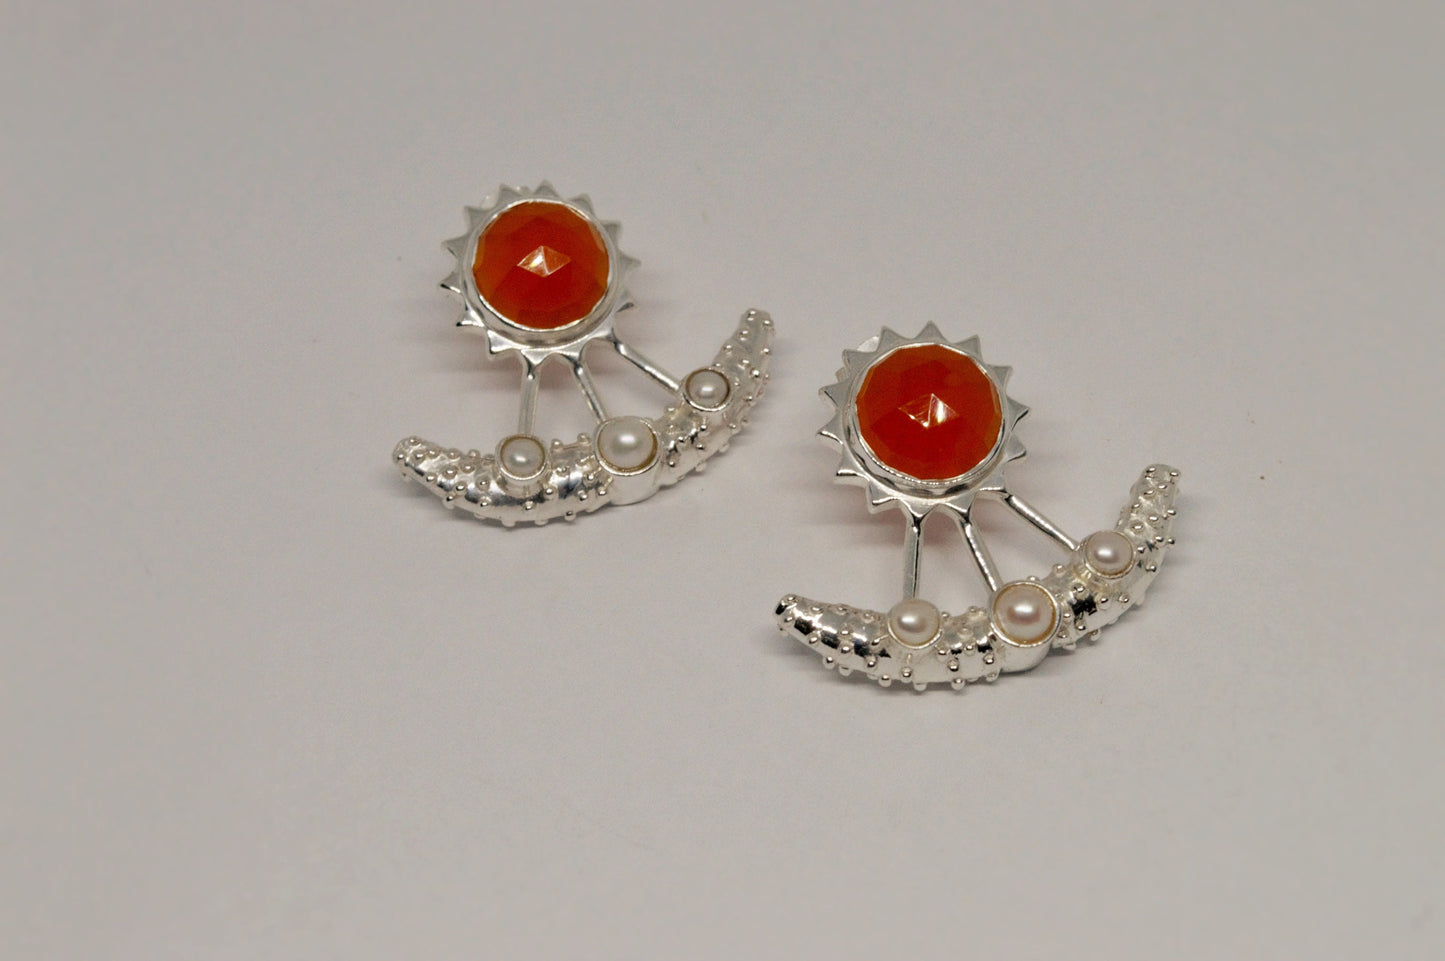 Carnelian, Pearl Earrings, Sterling Silver Indian Earrings, Unique Gemstone Earrings, June Birthstone, Pearl Jewelry, Gift For Her